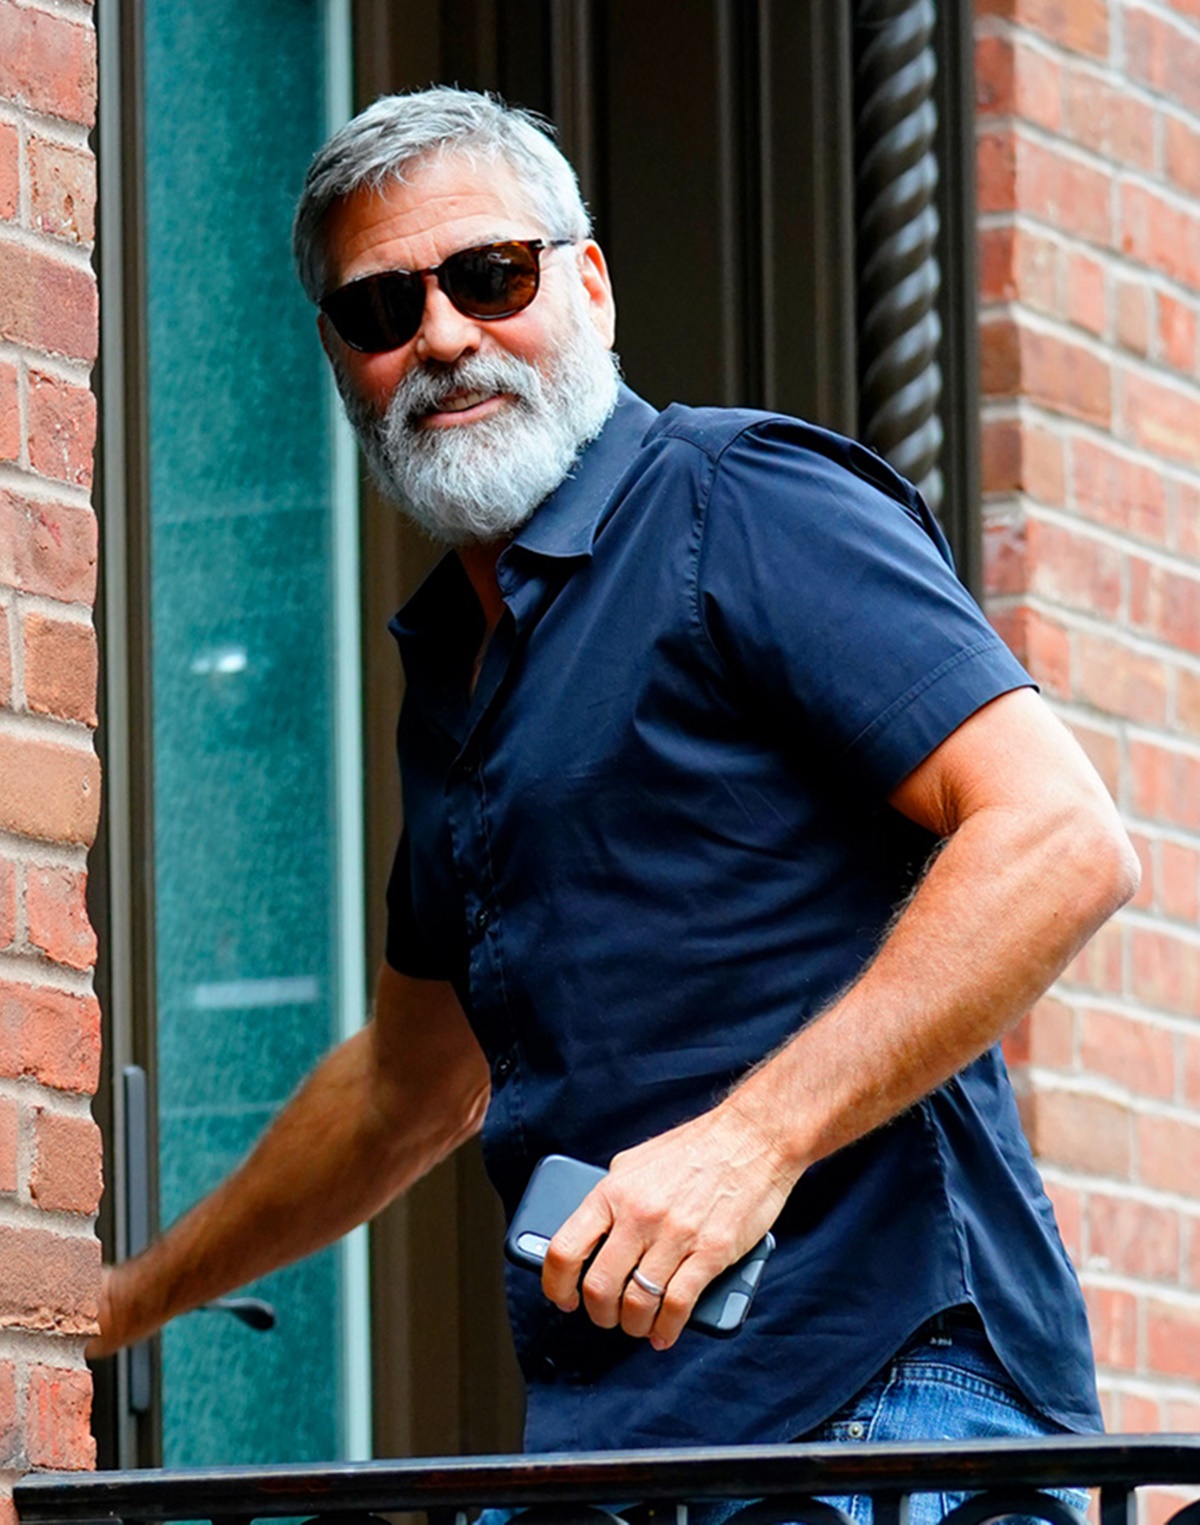 Amal Clooney elárulta, hogy mi volt az a férjében, amit ki nem álhatott - George Clooney